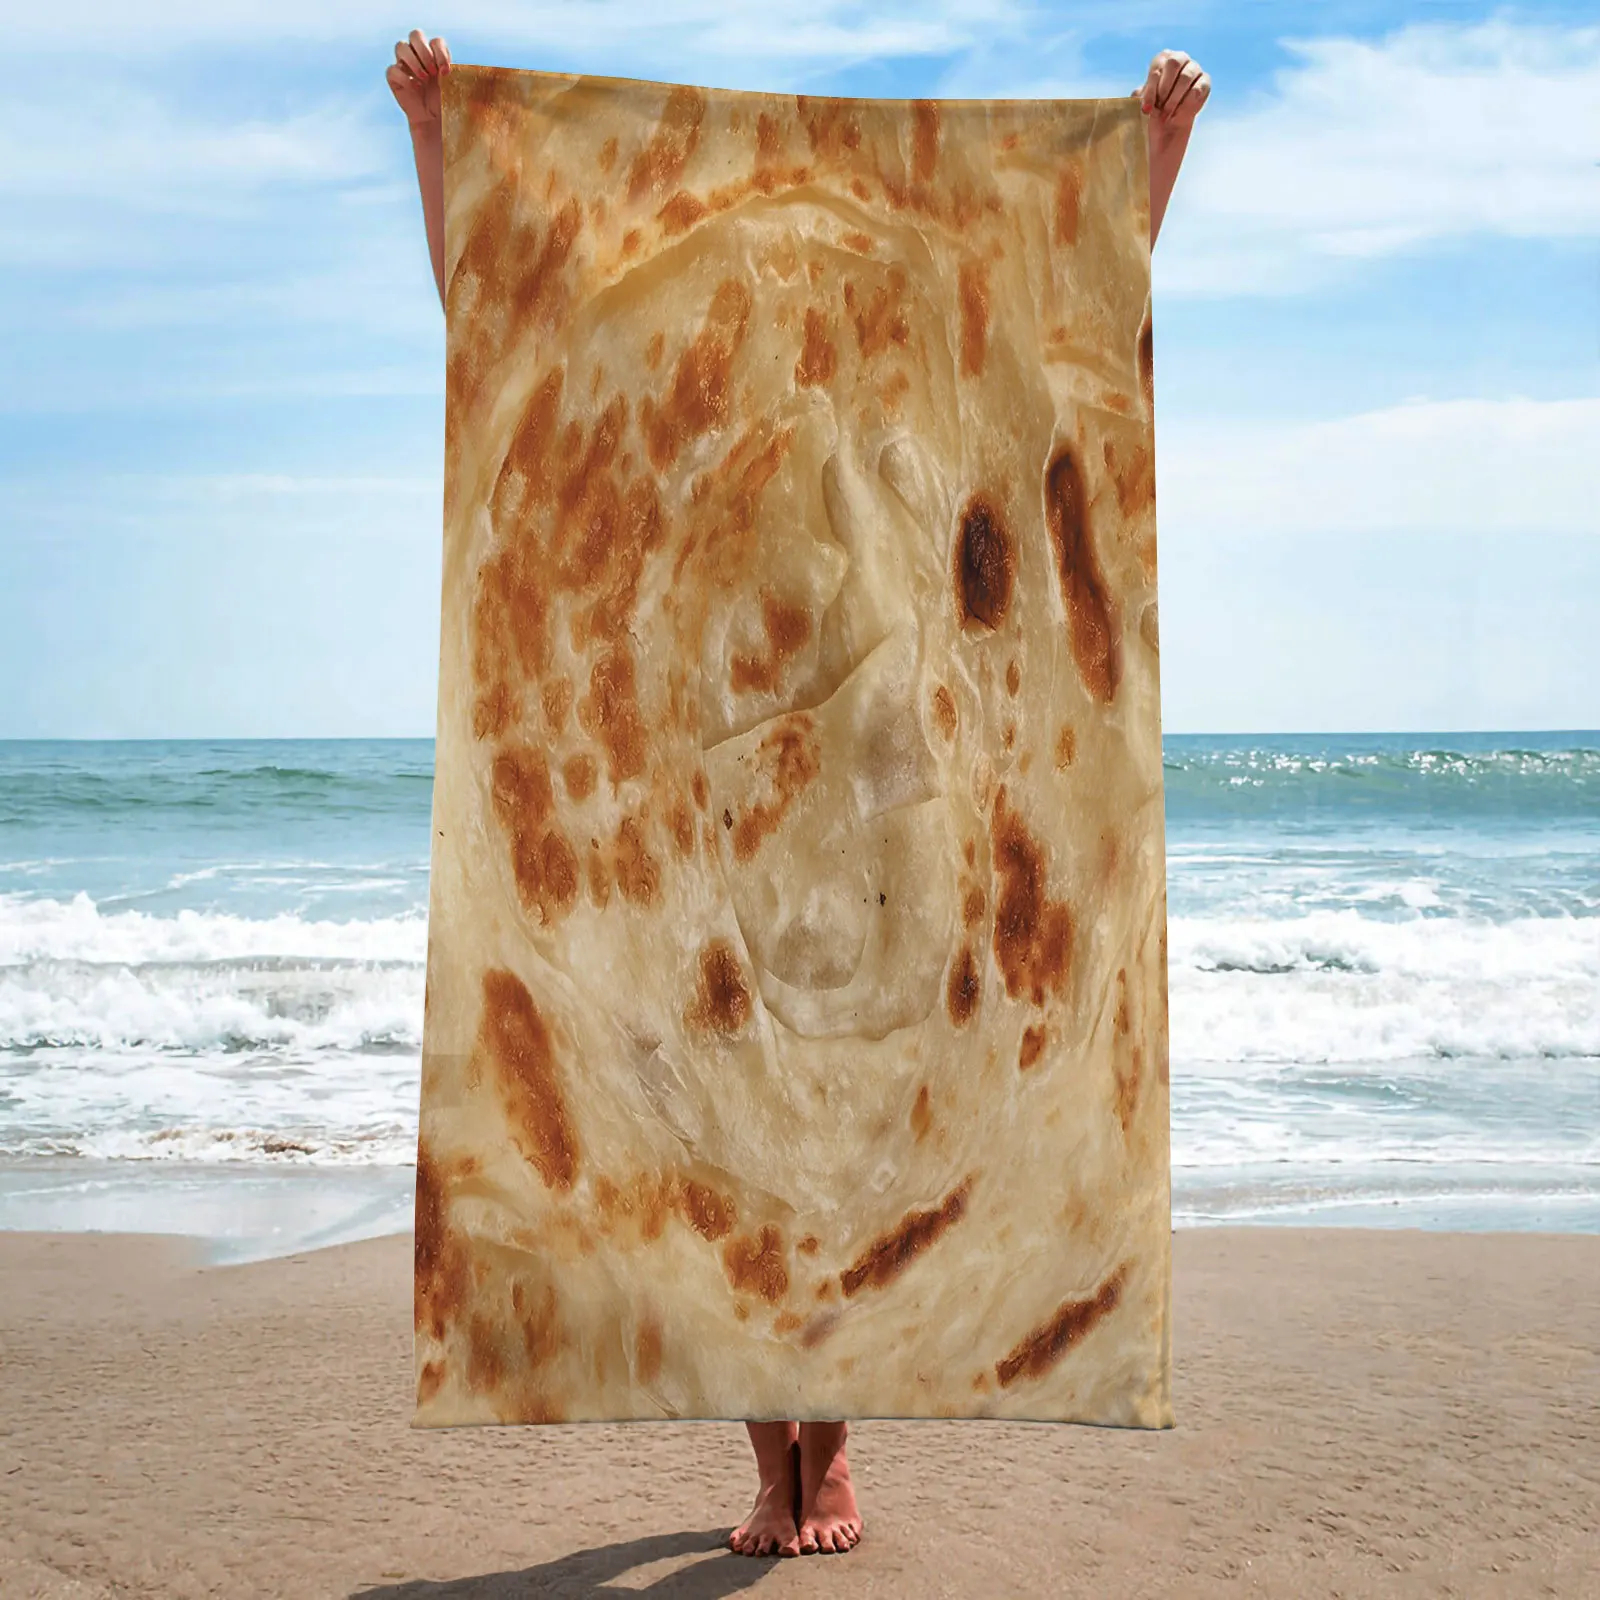 

Пляжное полотенце, мексиканское Burrito, тема еды, банное полотенце, одеяло, абсорбирующее, быстросохнущее, без песка, полотенца для бассейна, для мальчиков и девочек